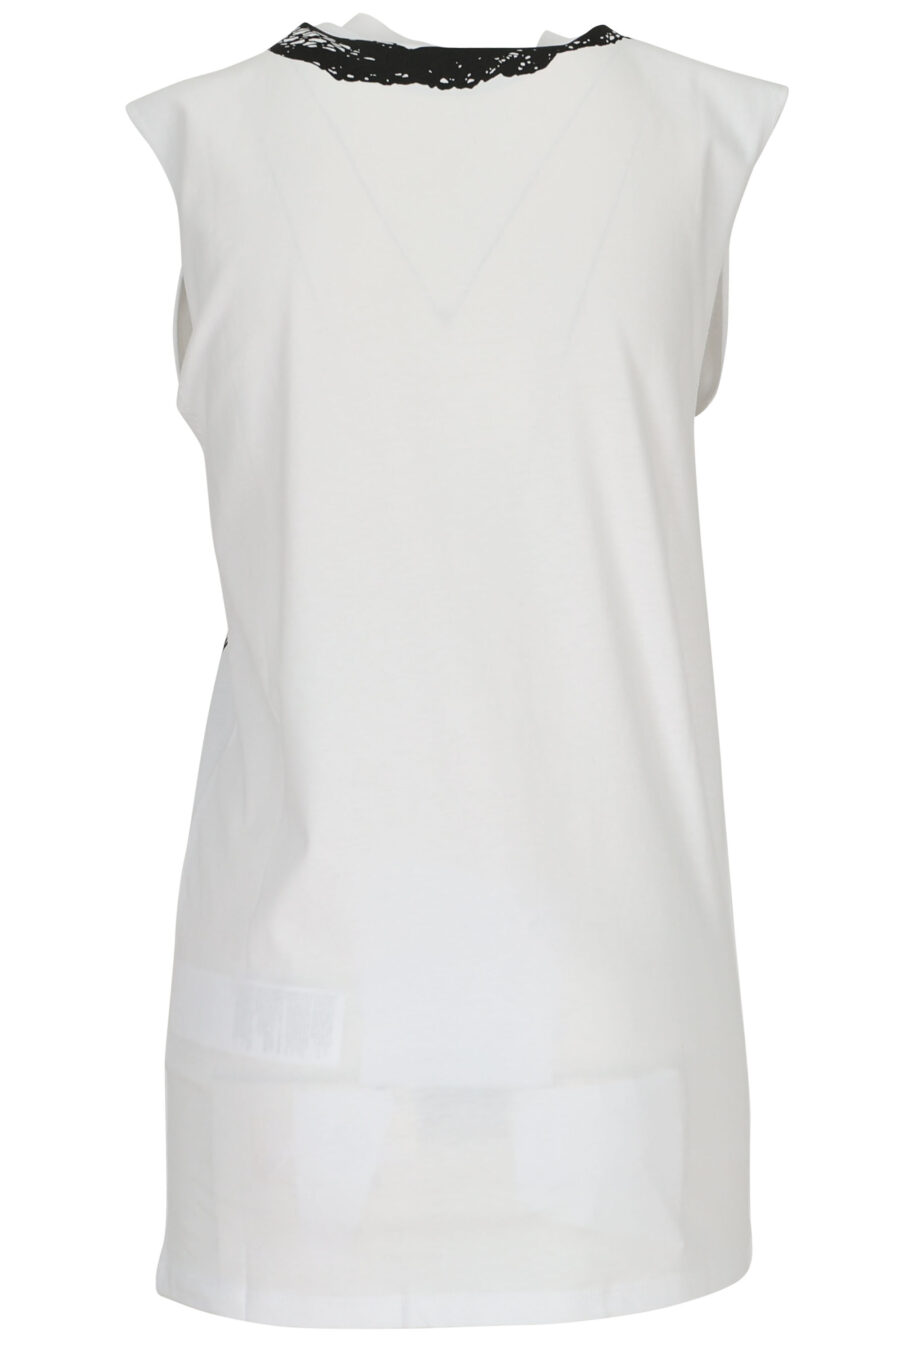 Camiseta blanca sin mangas con estampado red negro - 8054943662148 1